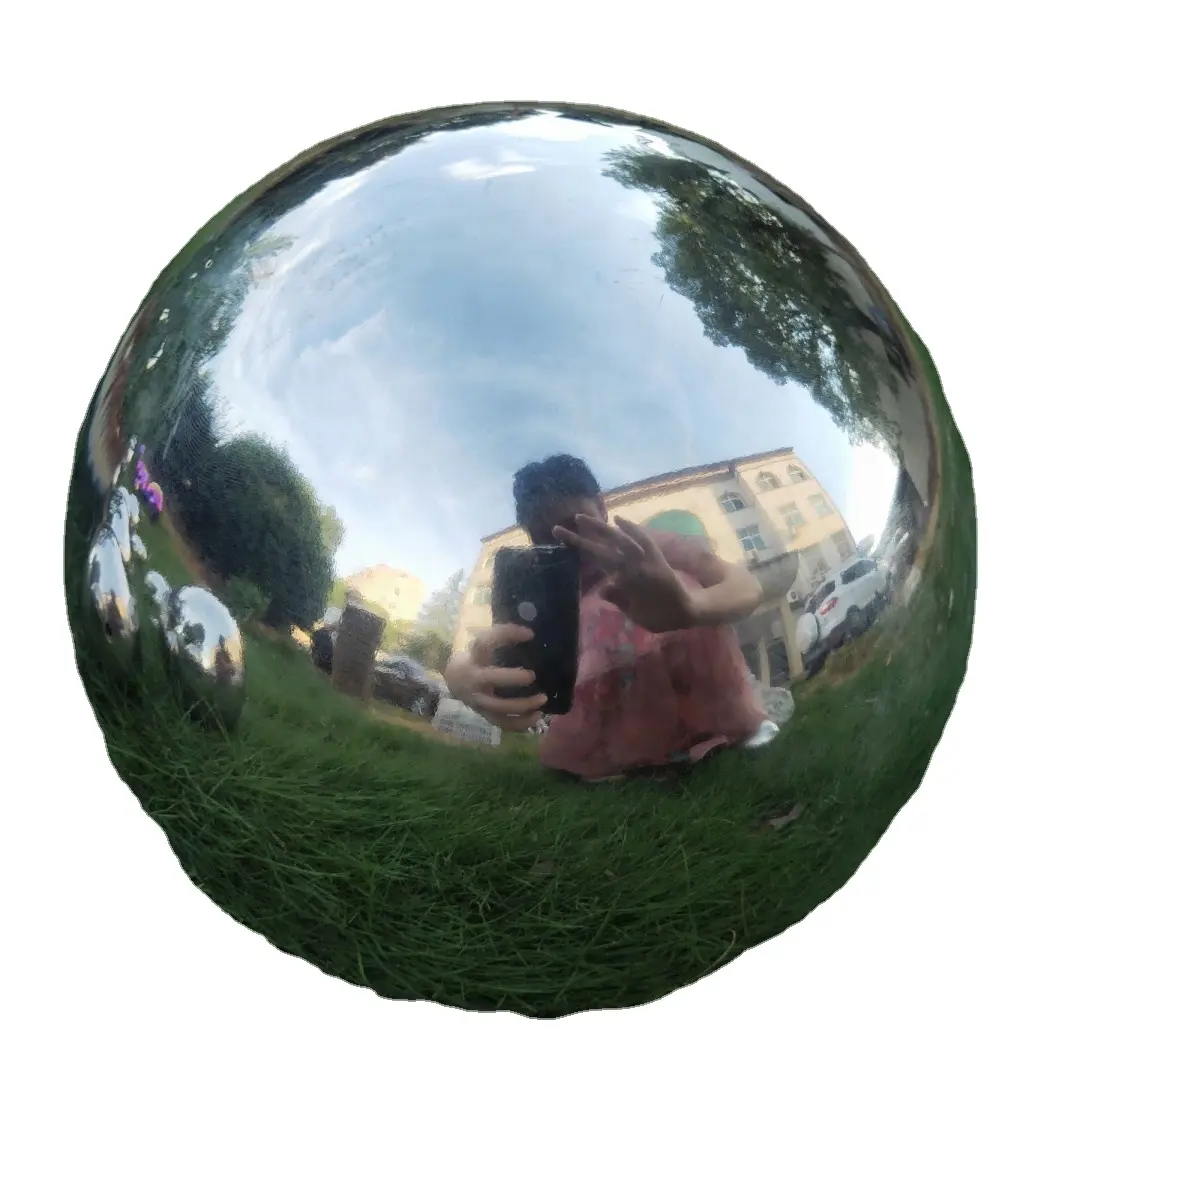 Große Spiegel kugel aus Edelstahl für die Garten dekoration